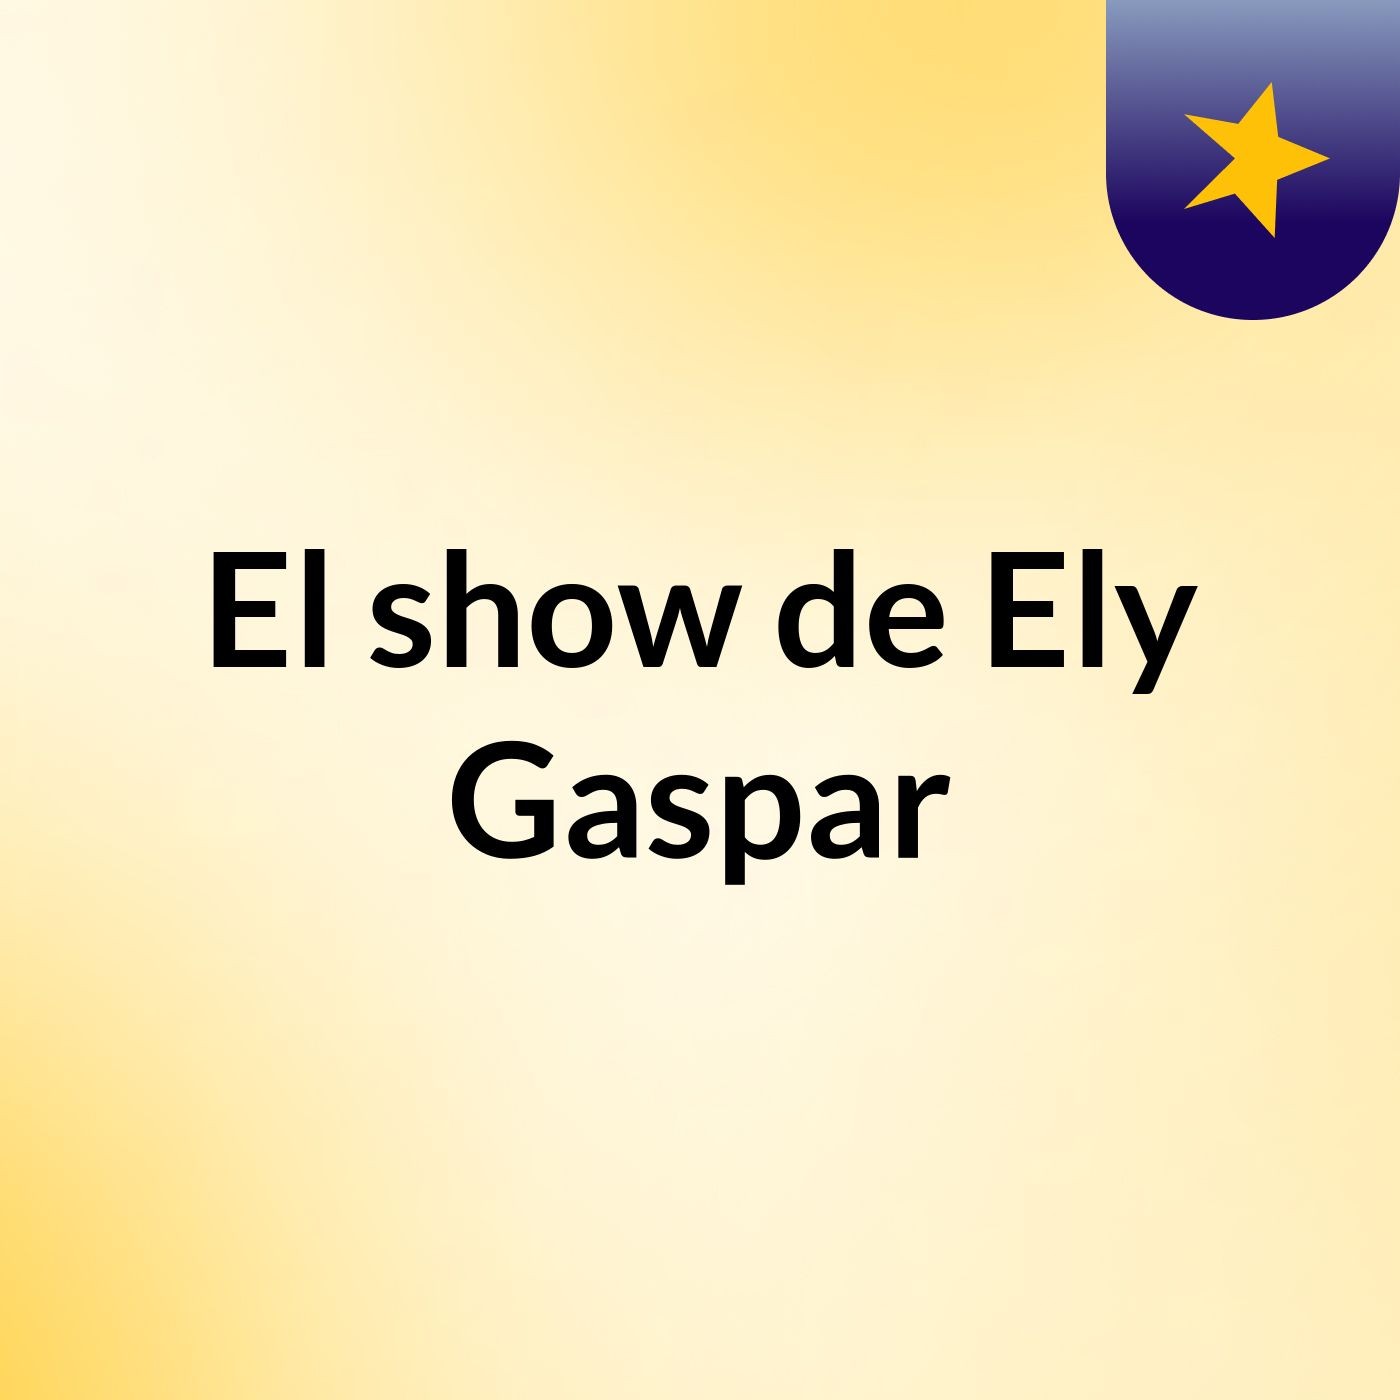 El show de Ely Gaspar